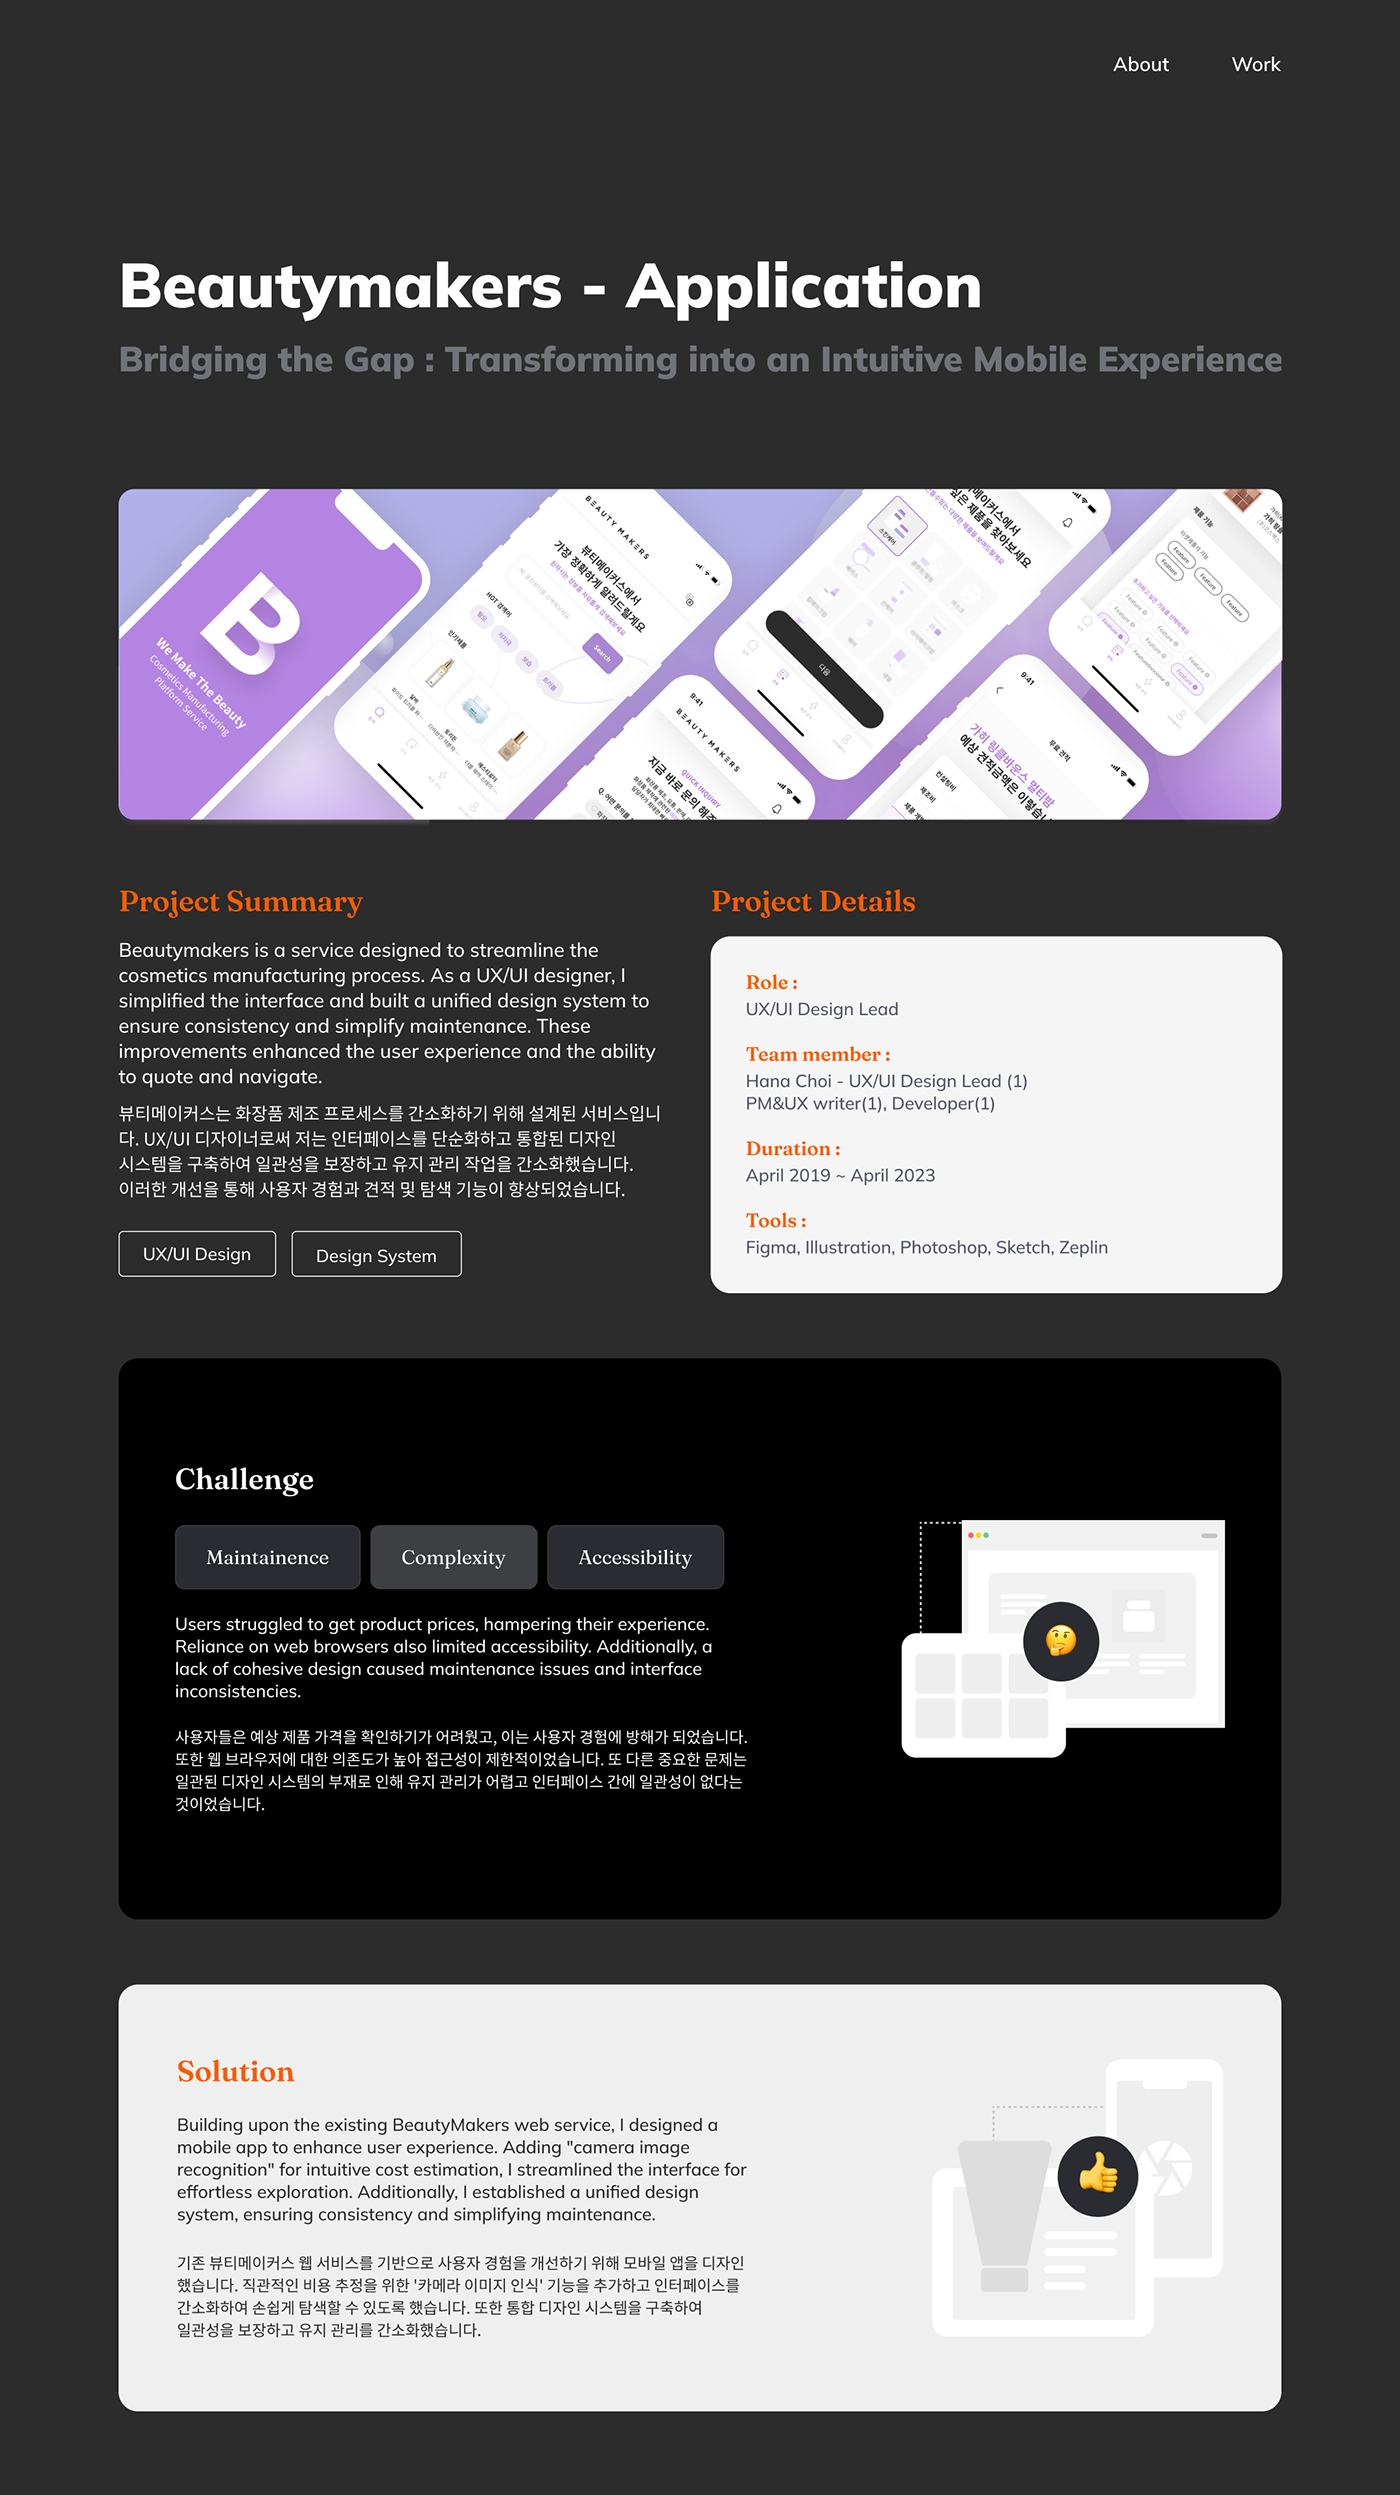 design UX design UI/UX Mobile app ui design user experience Figma app design Case Study user interface